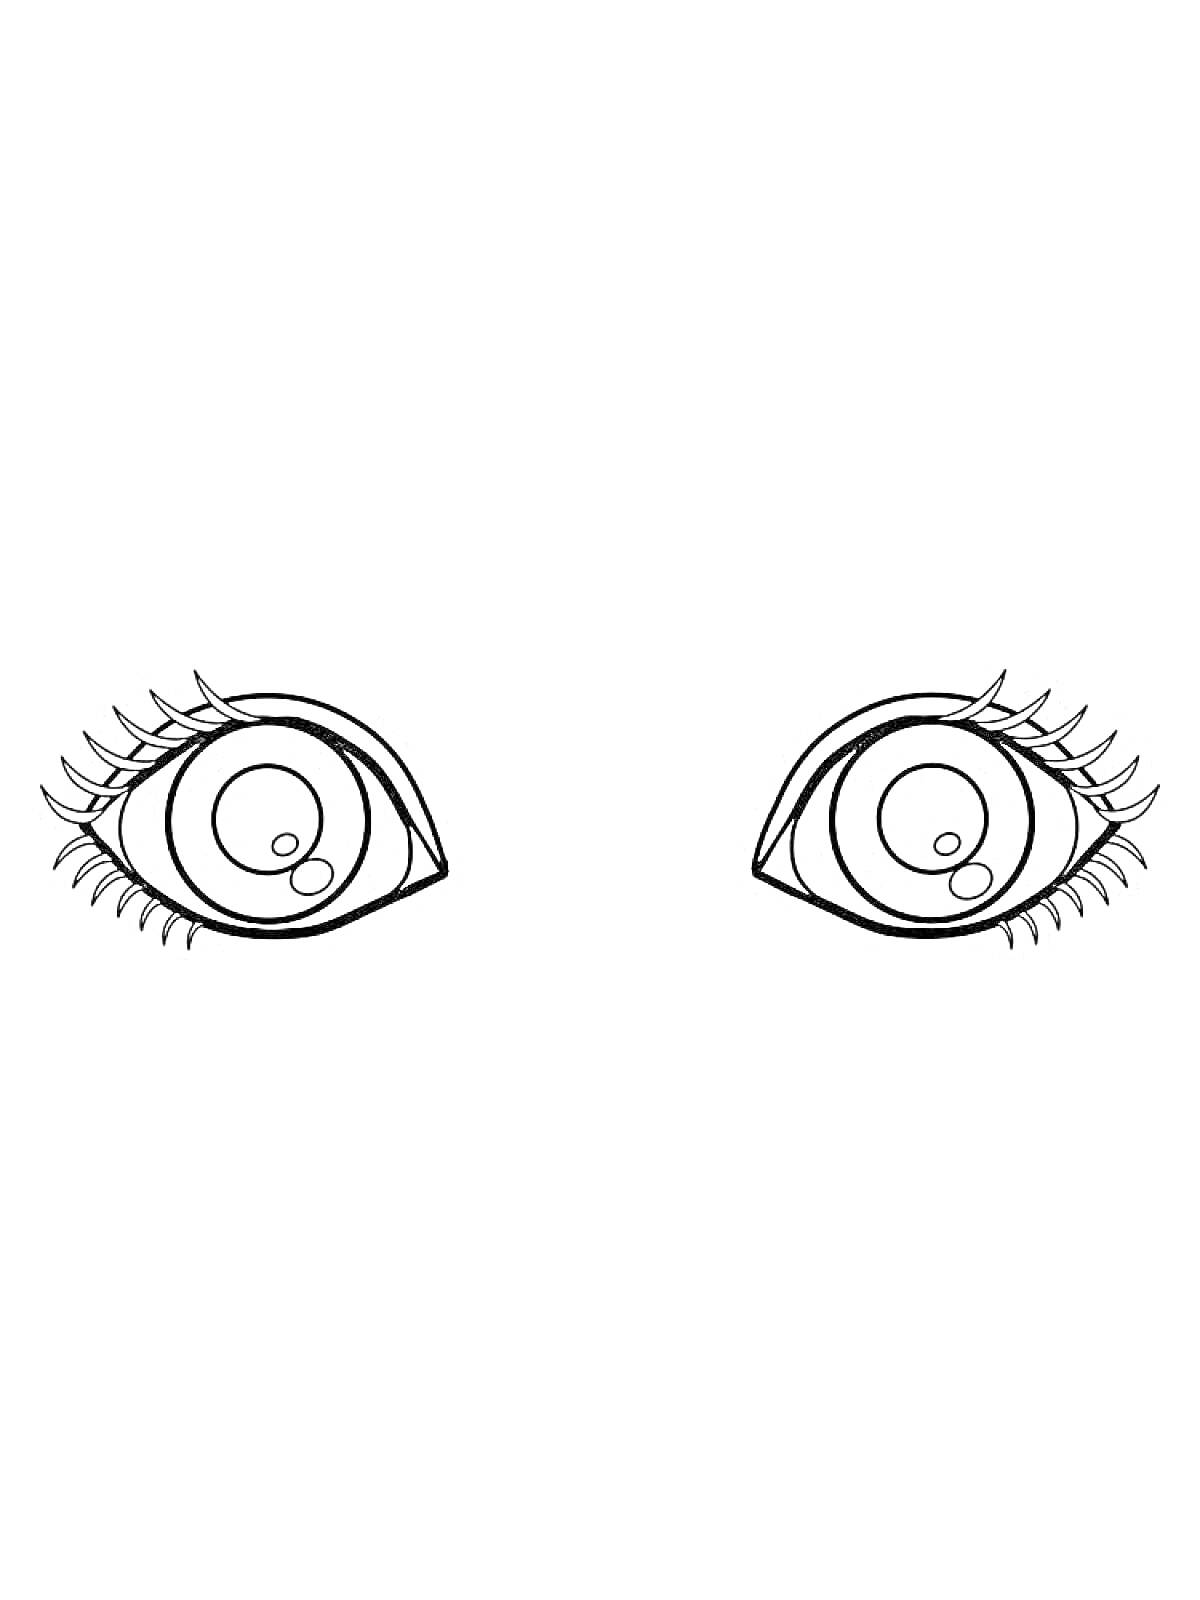 Раскраска с изображением пары глаз с длинными ресницами и зрачками